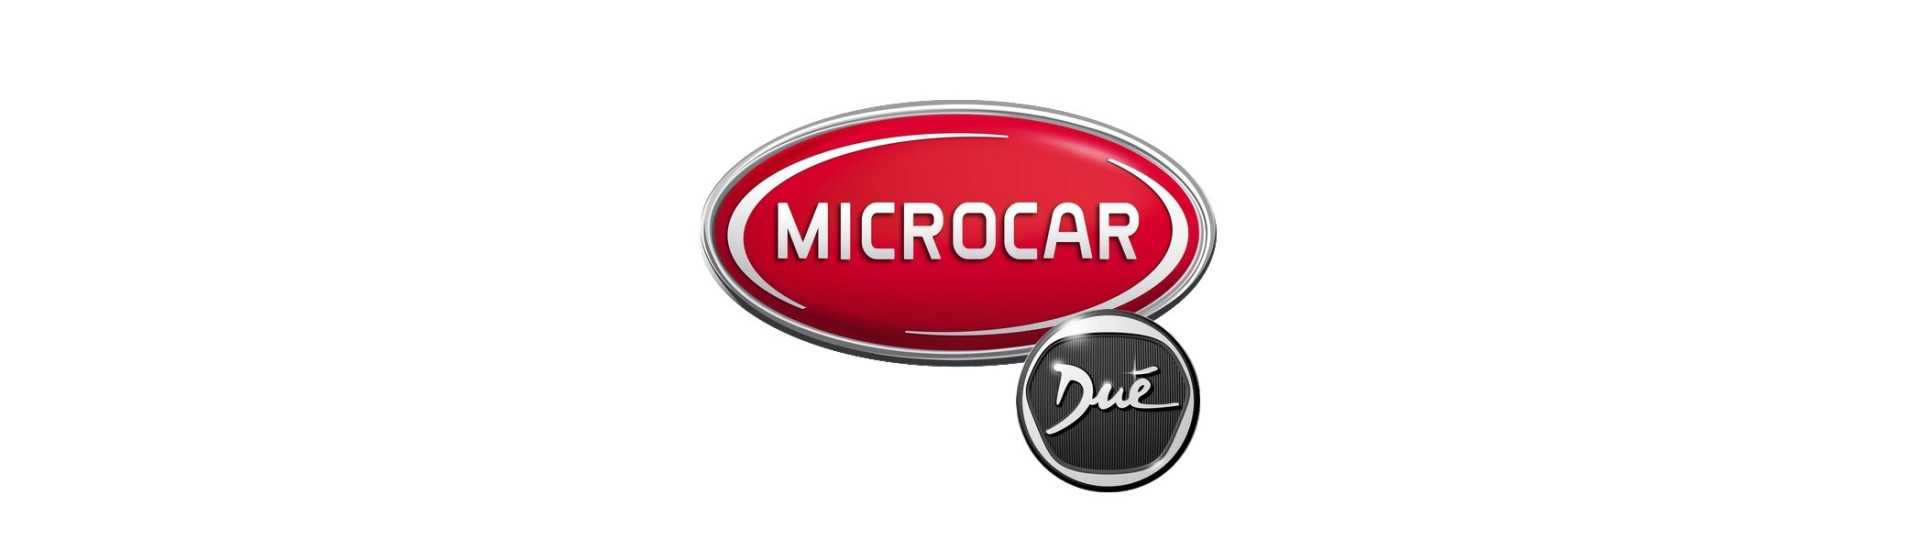 Hjulpaket till bästa pris för bil utan körkort Microcar Dué